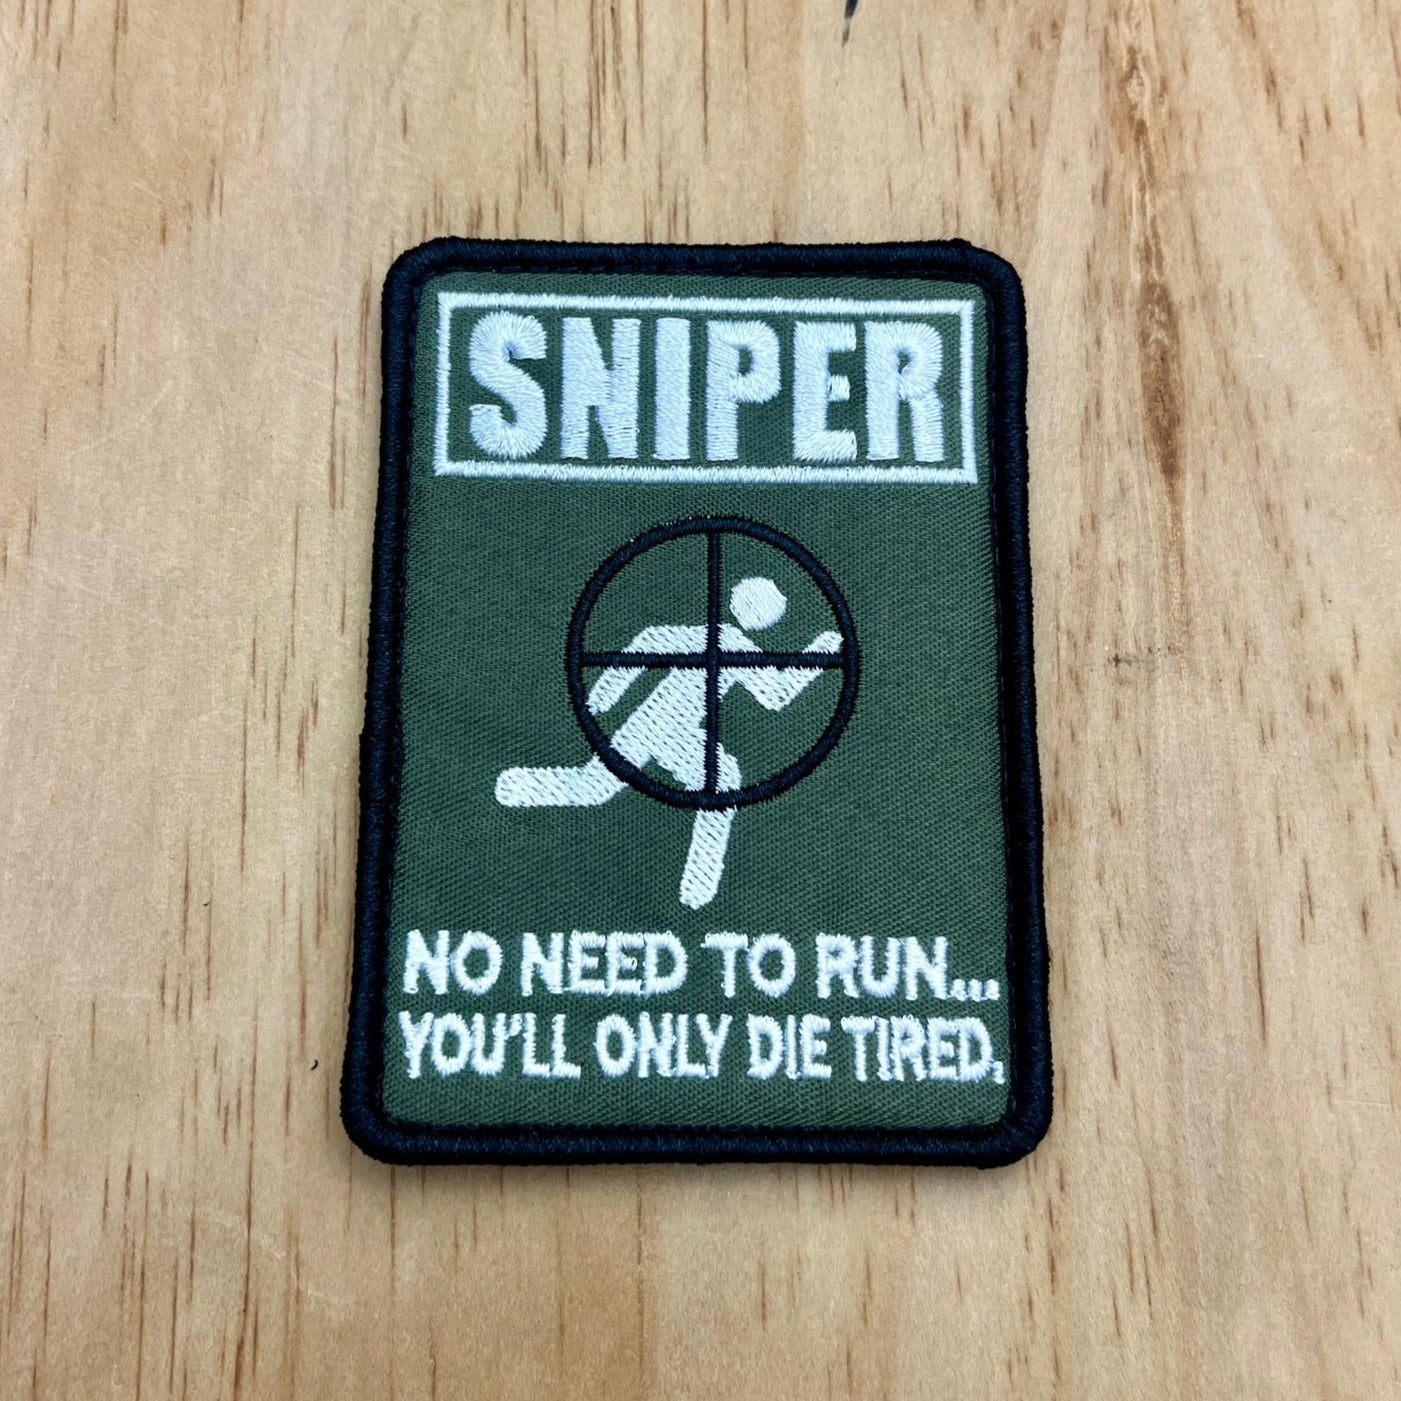 Sniper patch